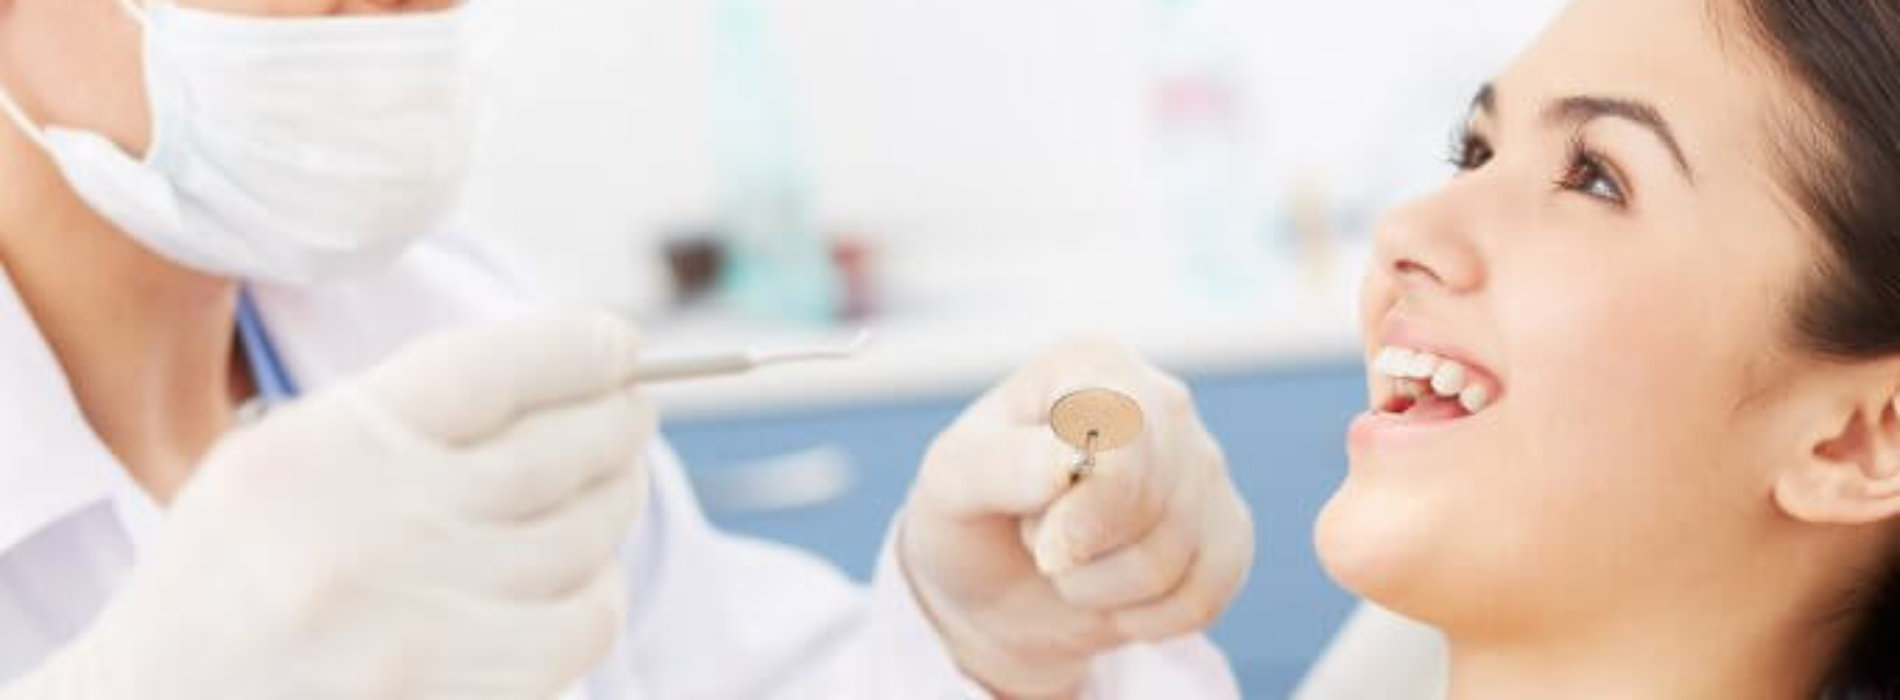 Dentysta nie sadysta, czyli bezbolesne leczenie zębów